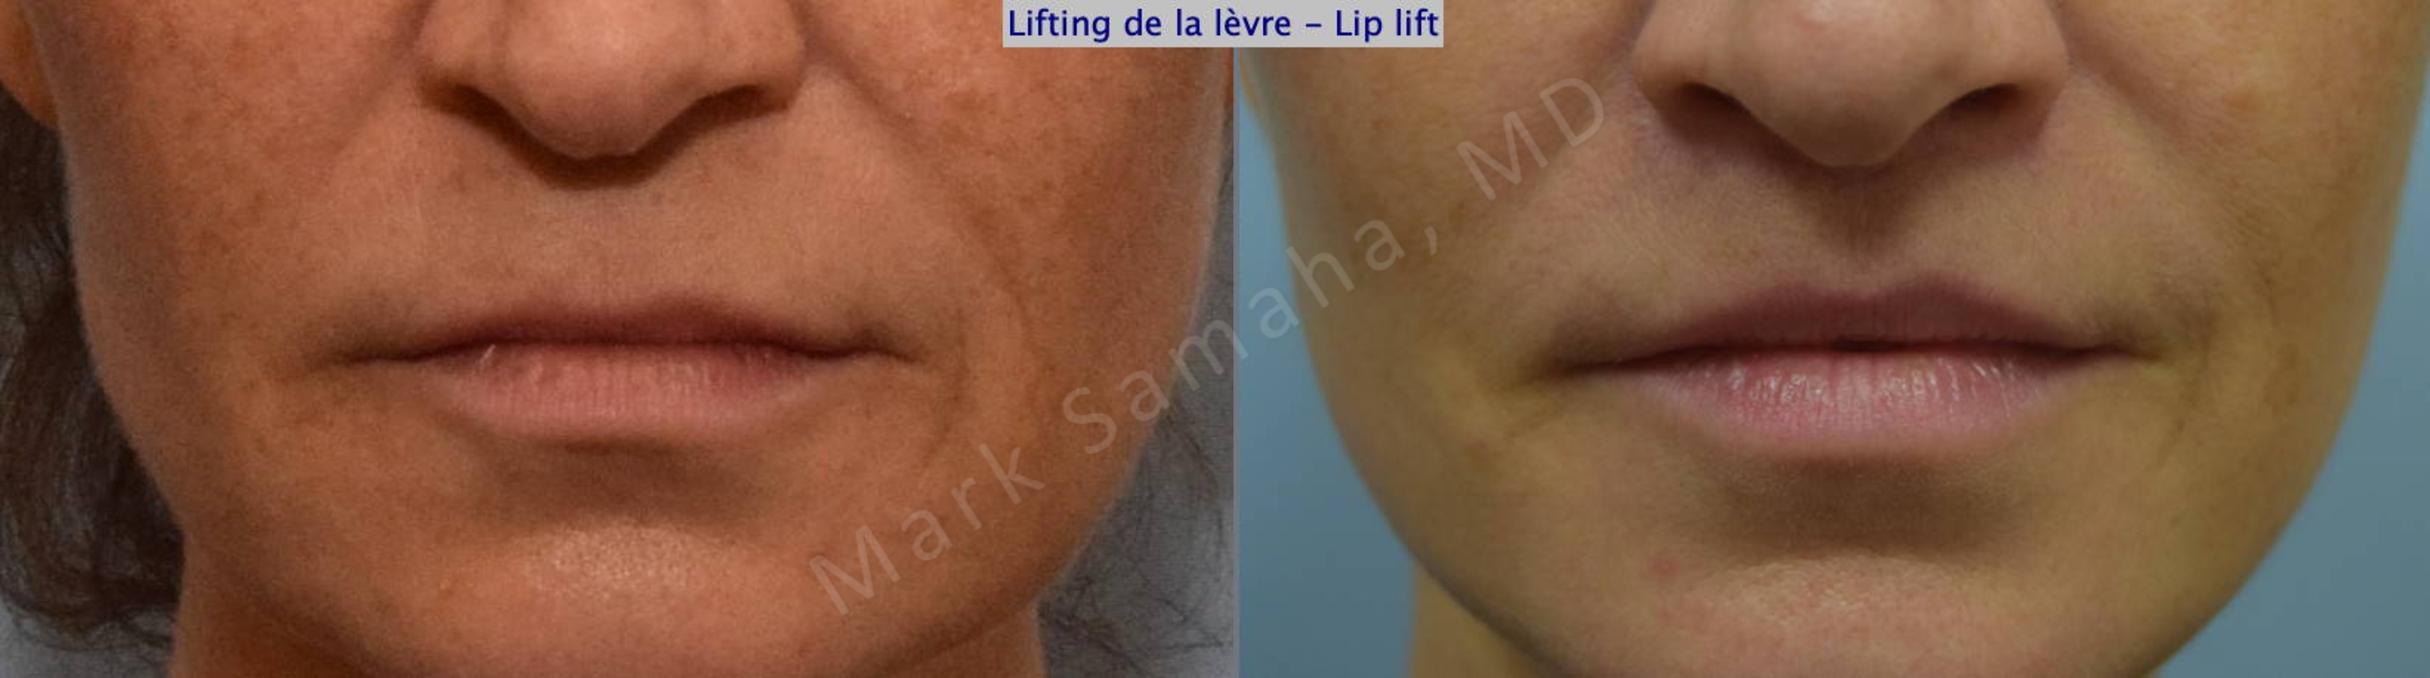 Before & After Lip Lift / Lifting de la lèvre supérieure Case 131 View #1 View in Mount Royal, QC